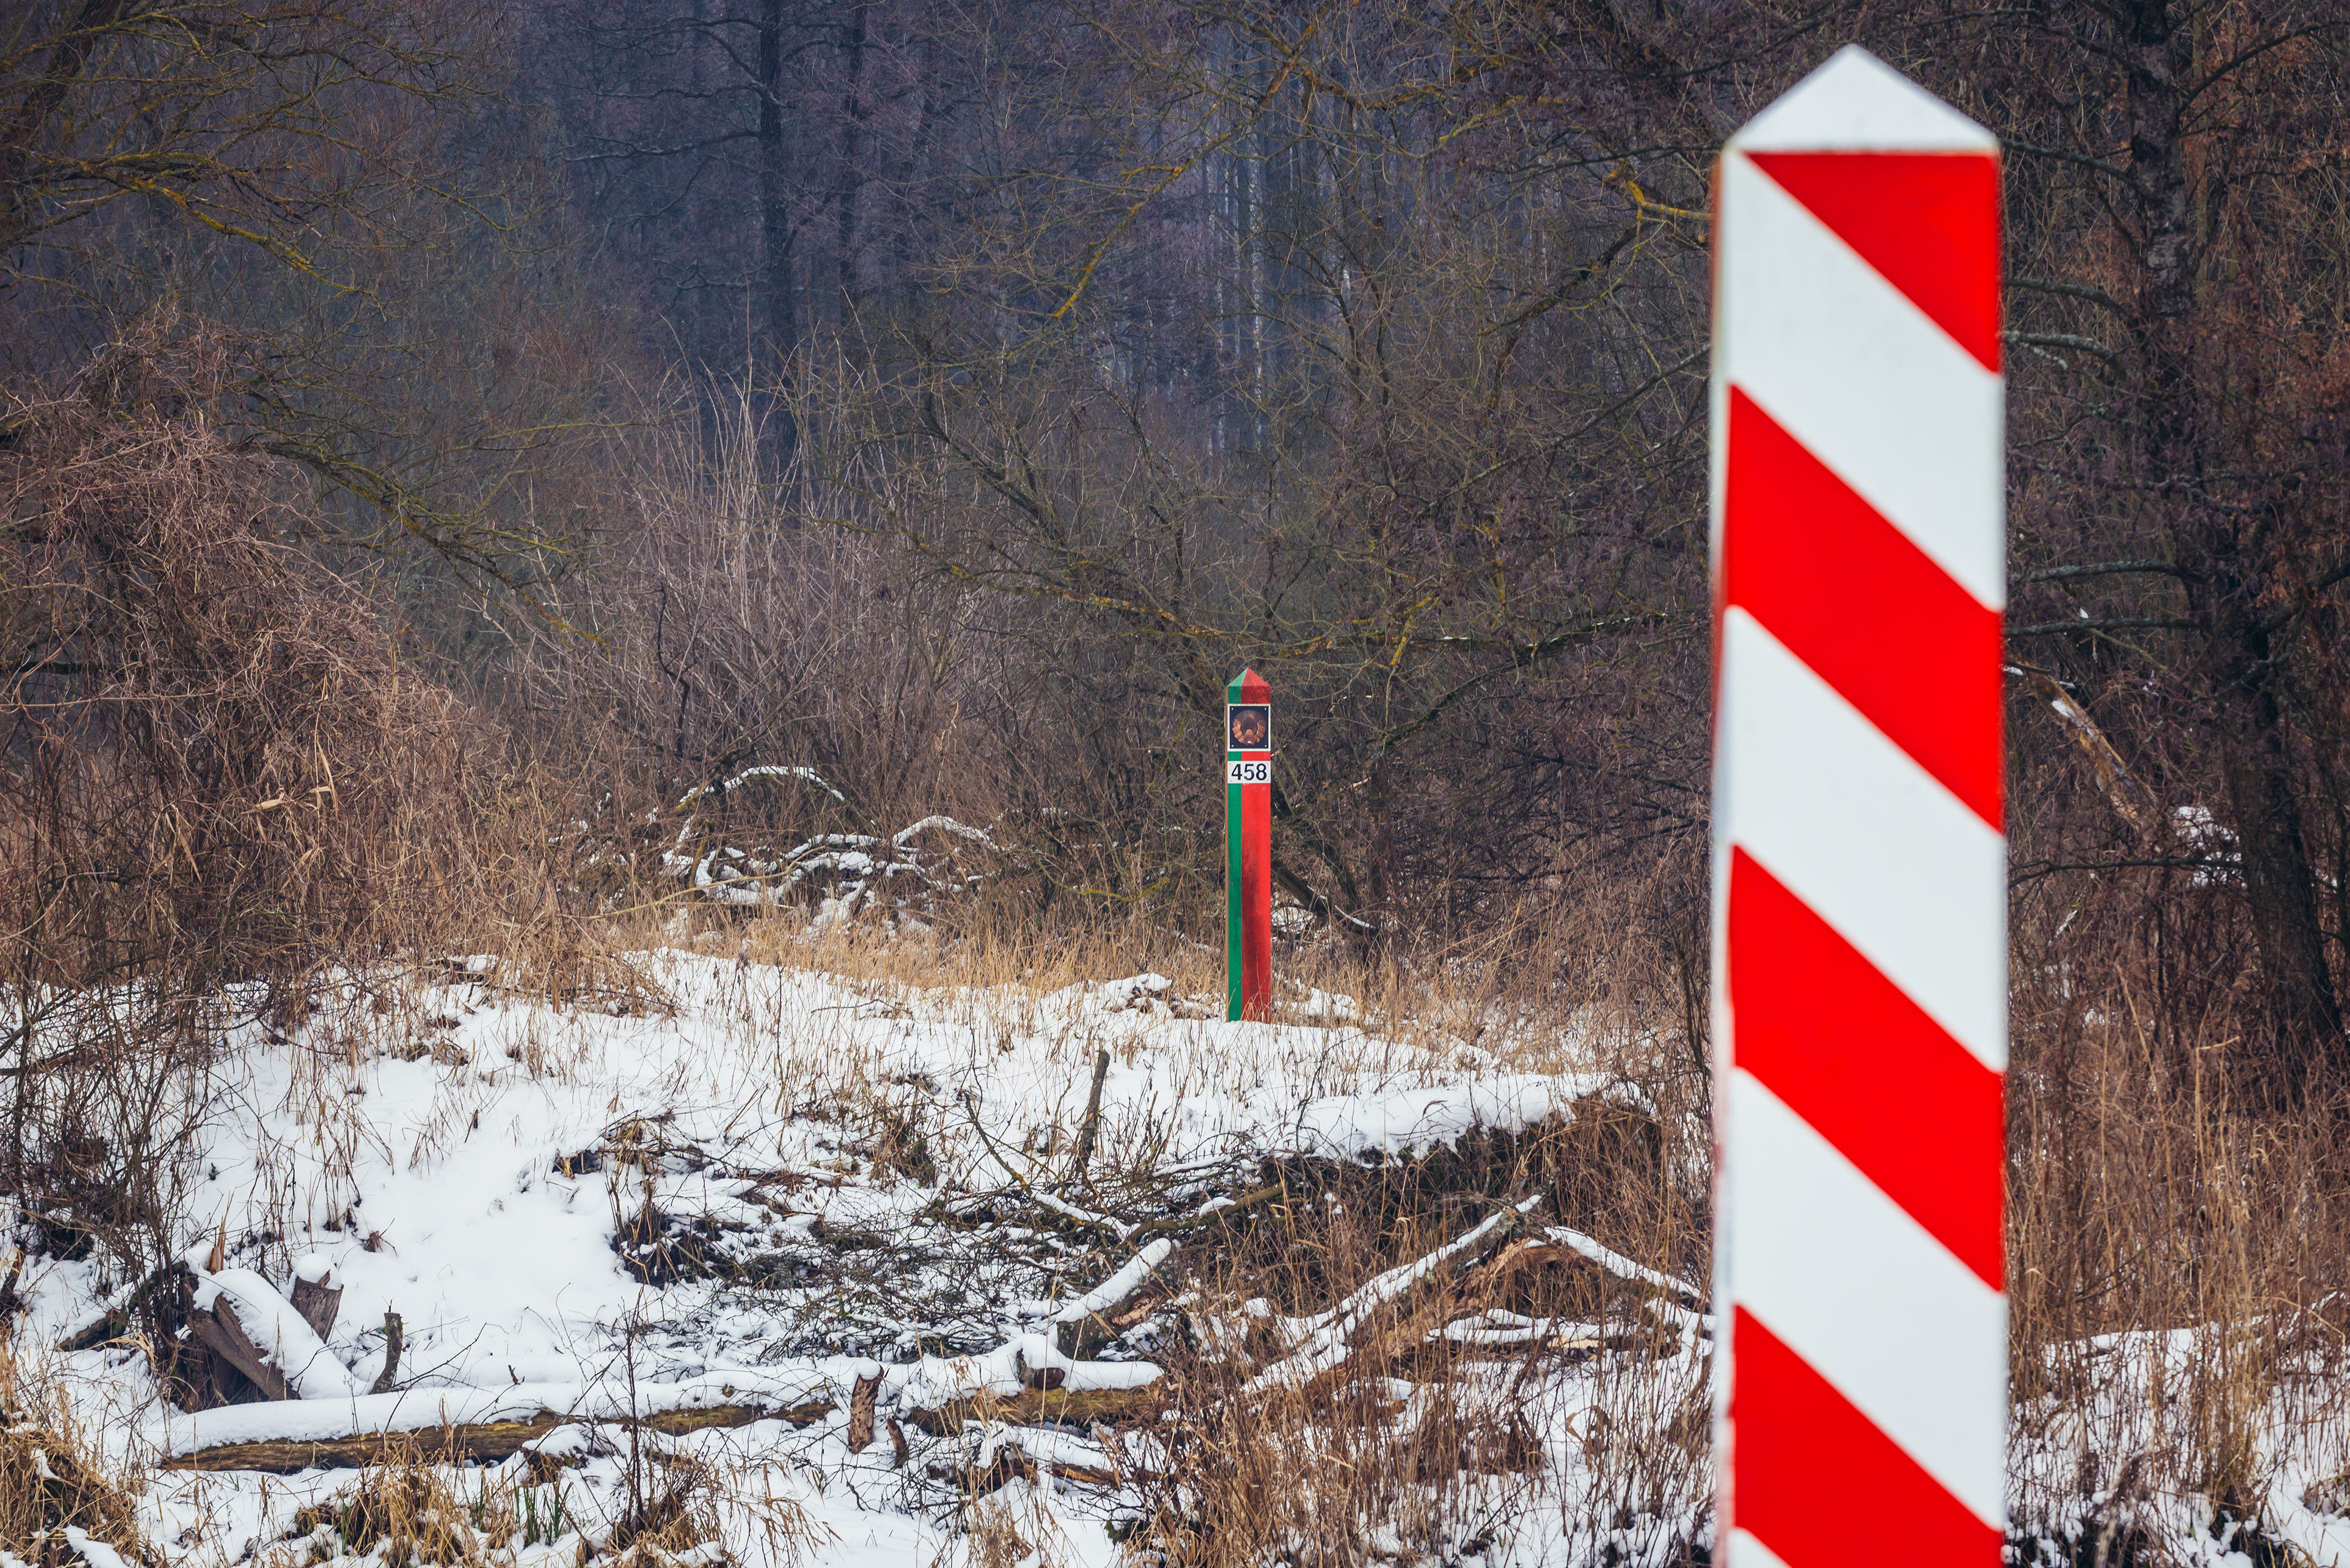   Sammelaktion für Geflüchtete | Linken-Abgeordnete fahren an die belarussisch-polnische Grenze  